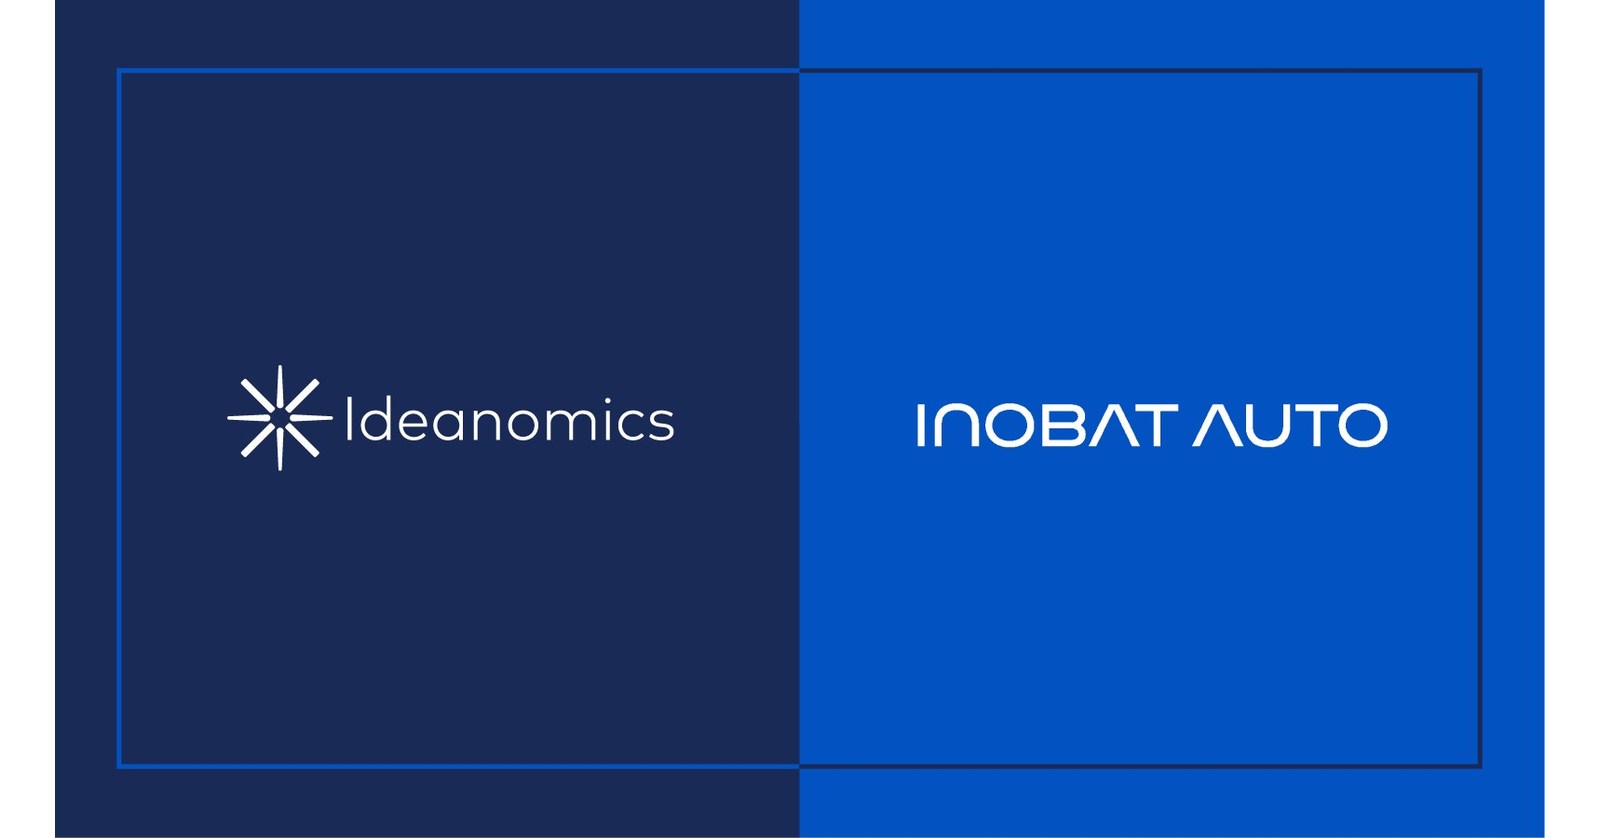 Ideanomics oznamuje strategickú investíciu so spoločnosťou InoBat s cieľom spolupracovať na ponukách batérií pre elektromobily